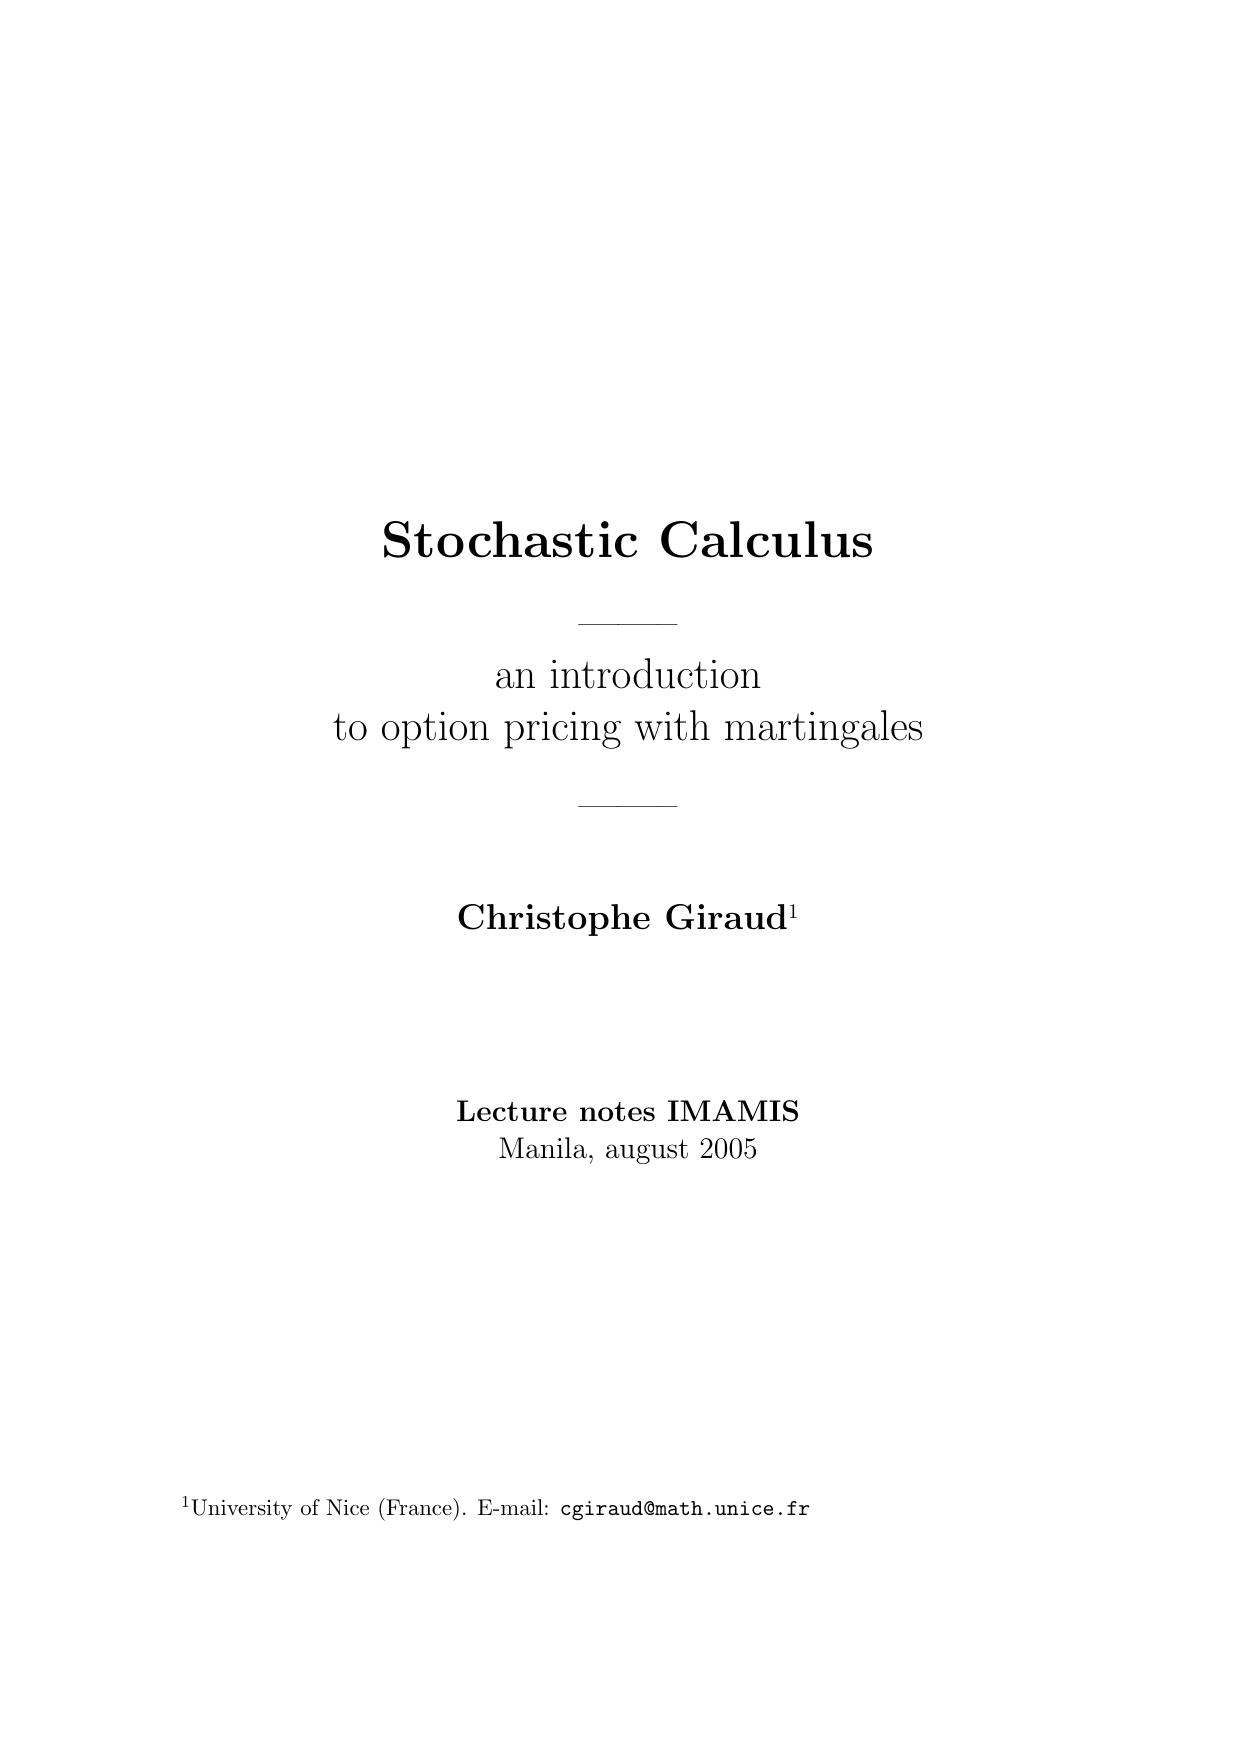 Stochastic Calculus 2005.pdf